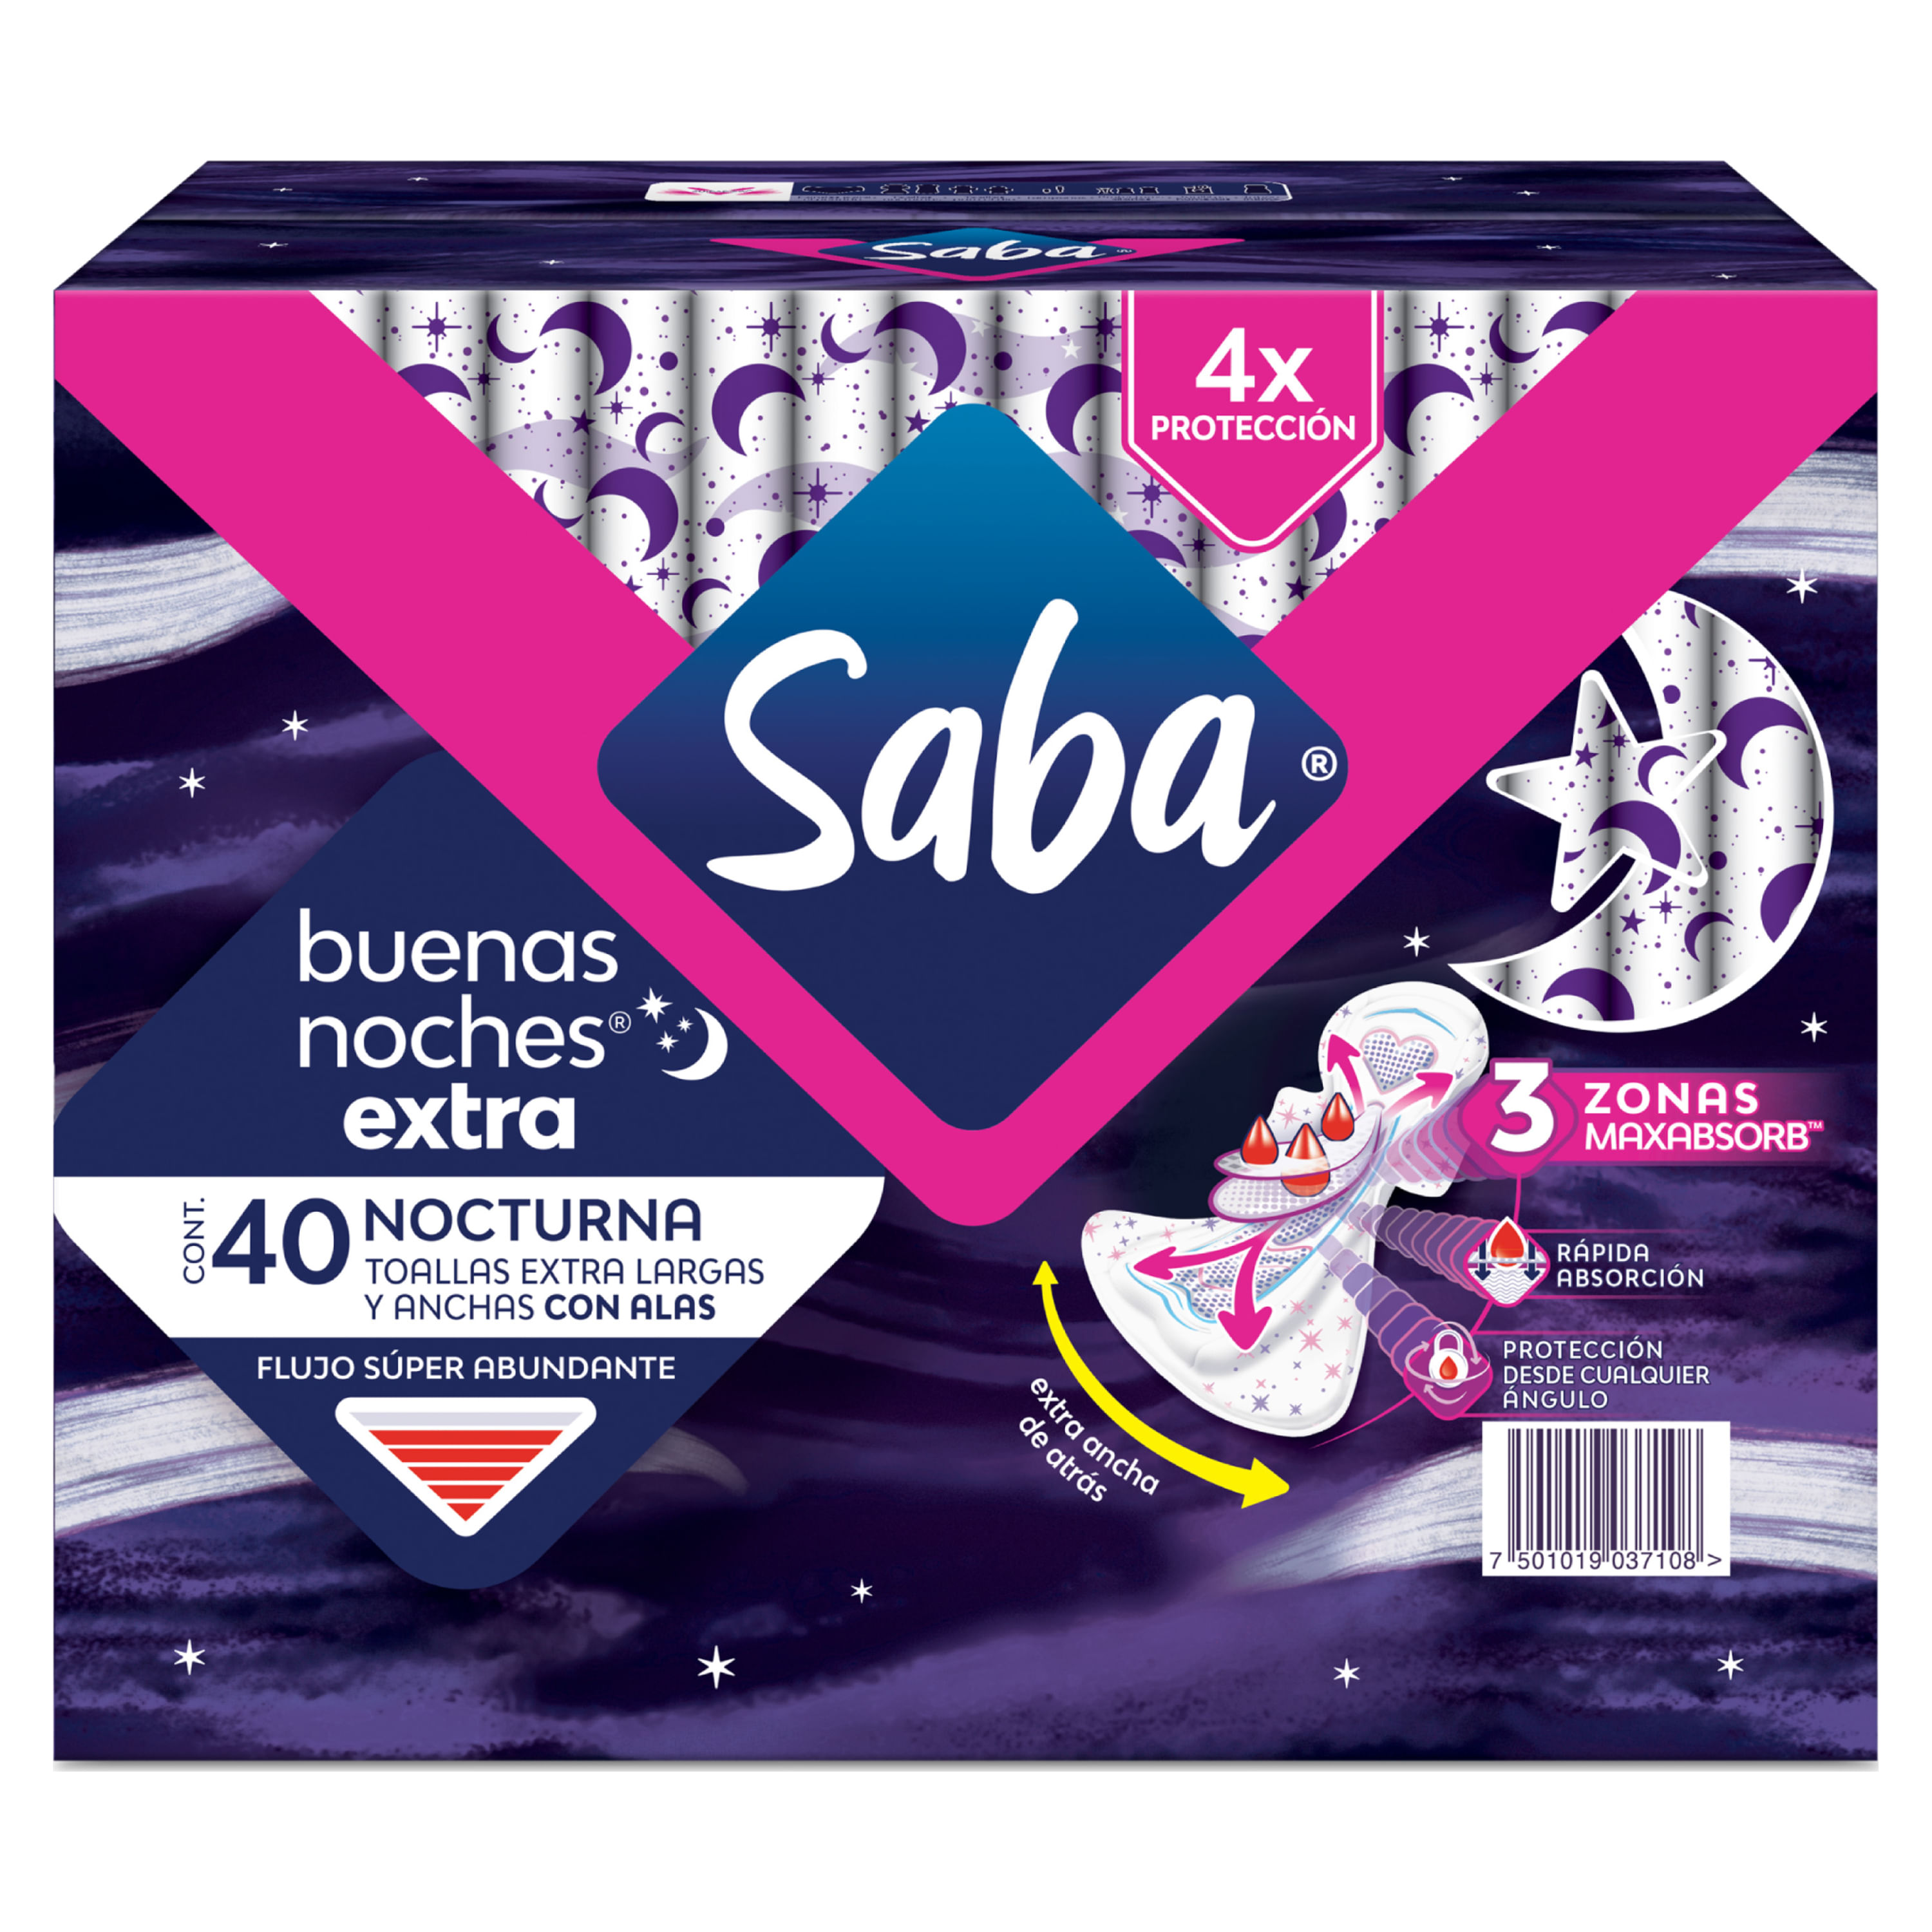 Toallas-Femeninas-Saba-Buenas-Noches-Extra-Flujo-S-per-Abundante-Con-Alas-40-Unidades-1-35662